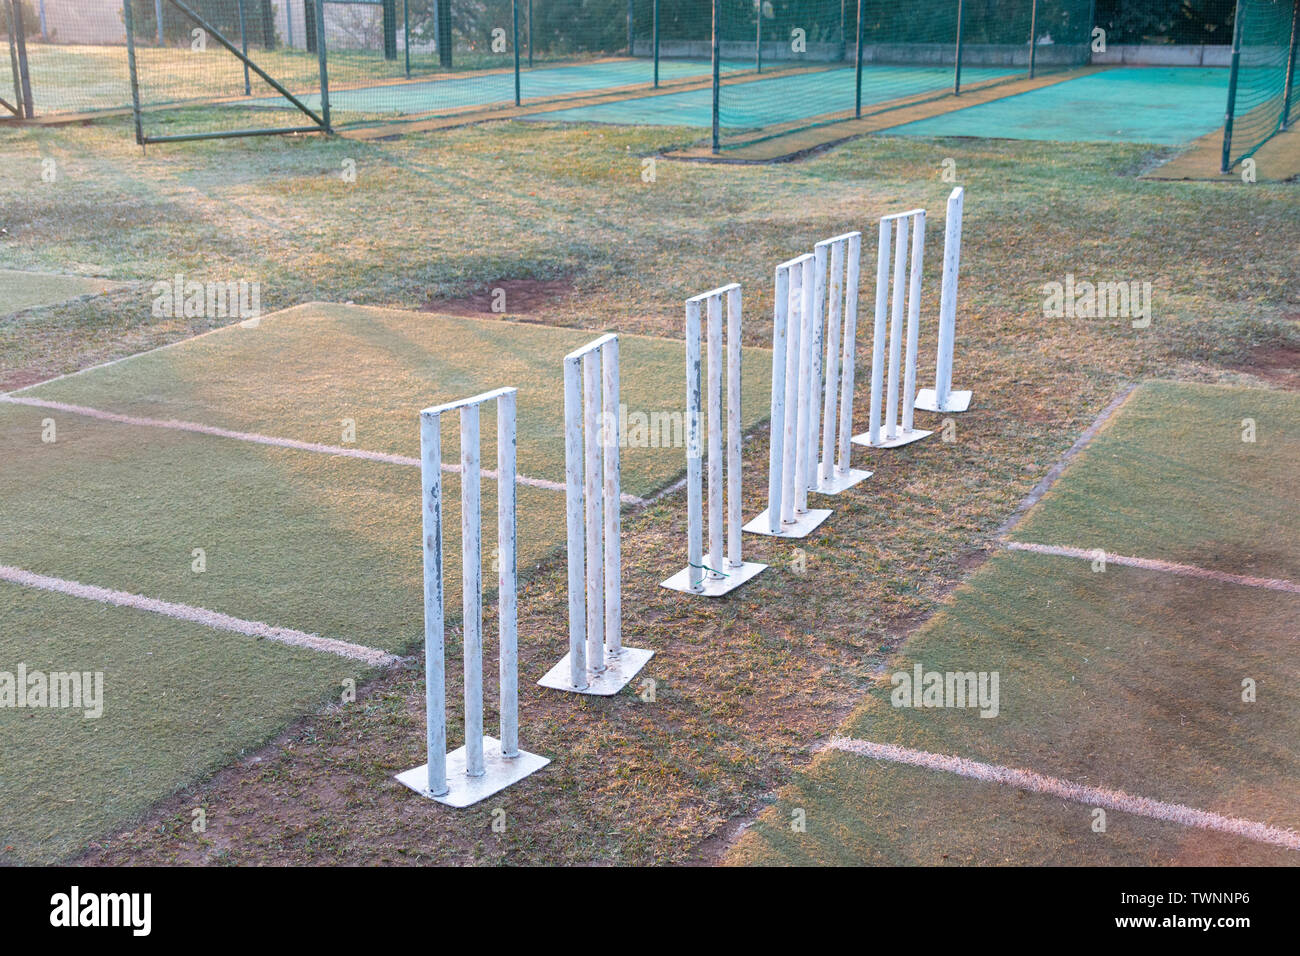 Une vue rapprochée de métal blanc sept guichets cricket tous de suite sur le terrain prêts à exercer Banque D'Images